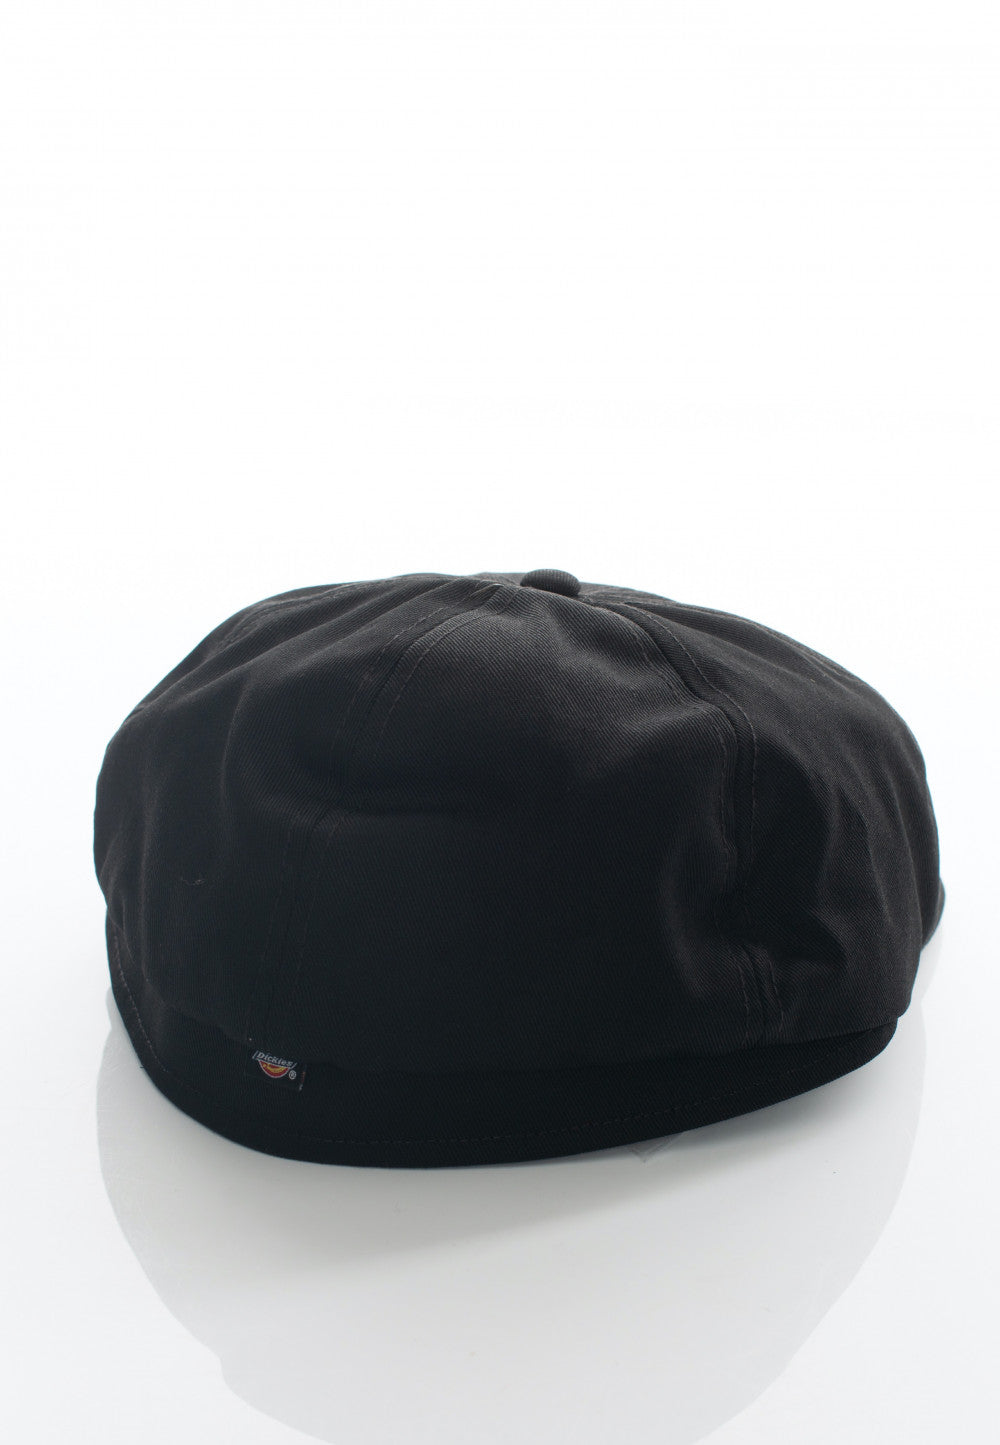 DICKIES - BURIEN CAP - Black